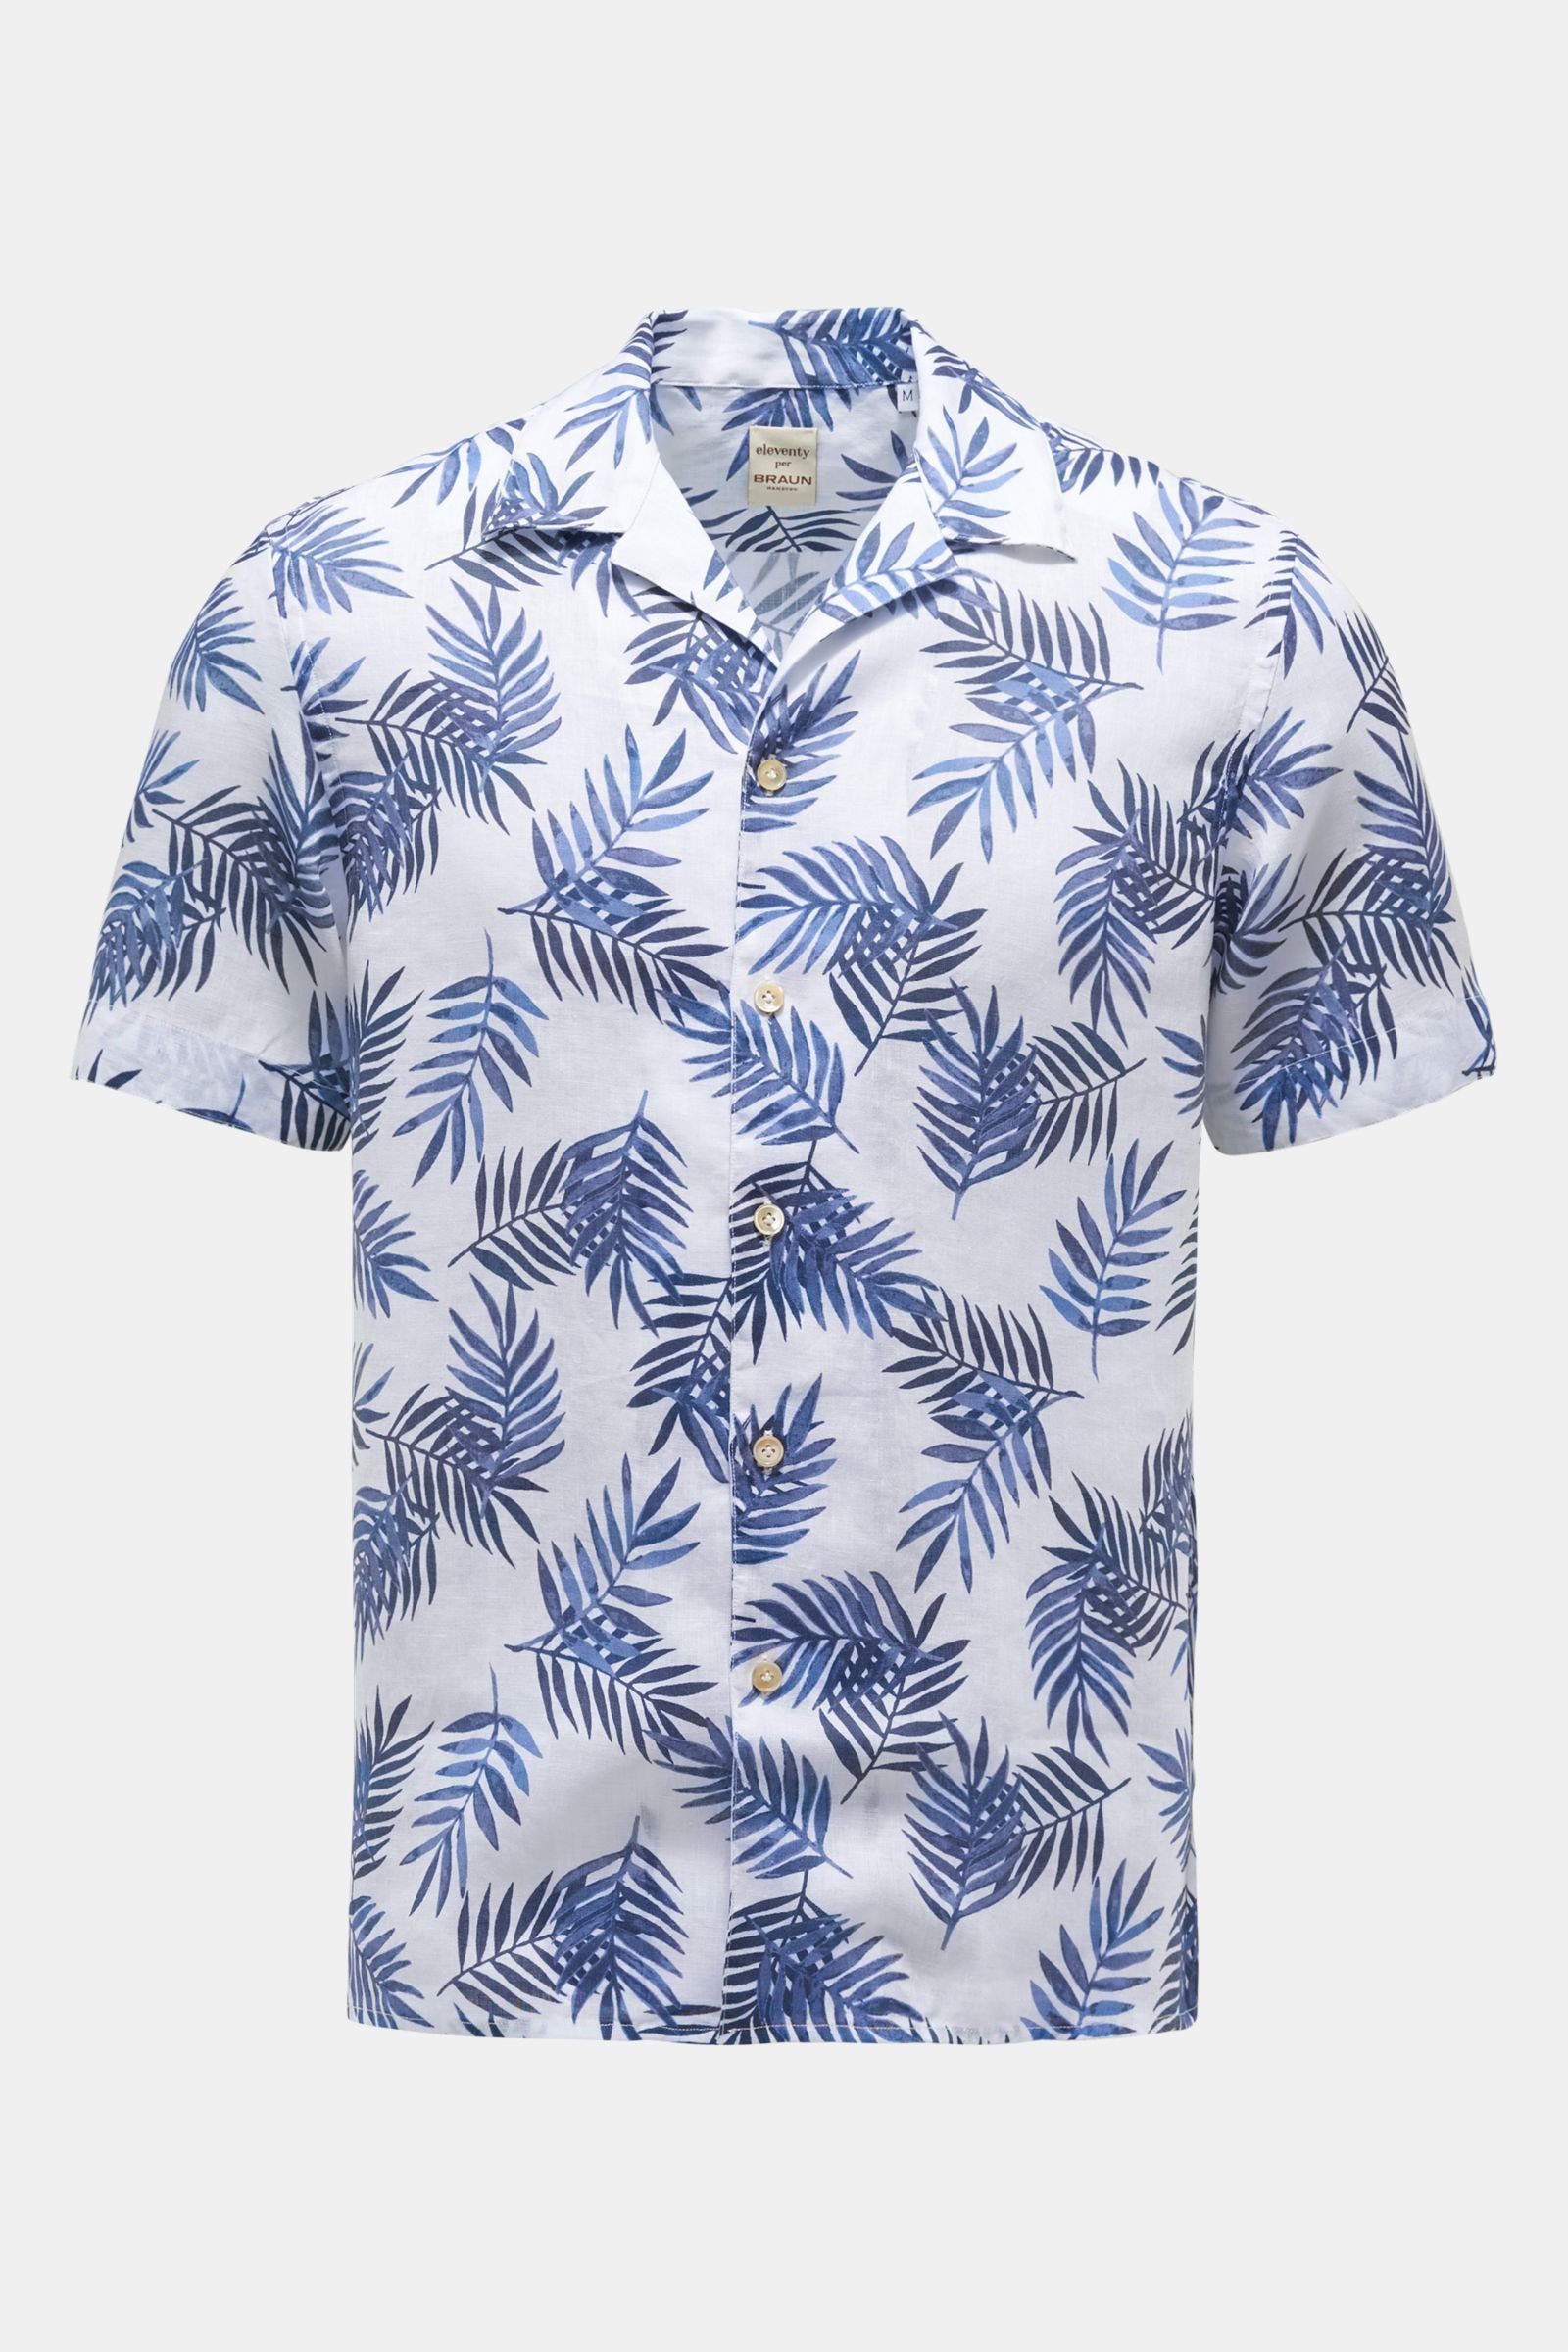 Linen short sleeve shirt Cuban collar navy/white patterned